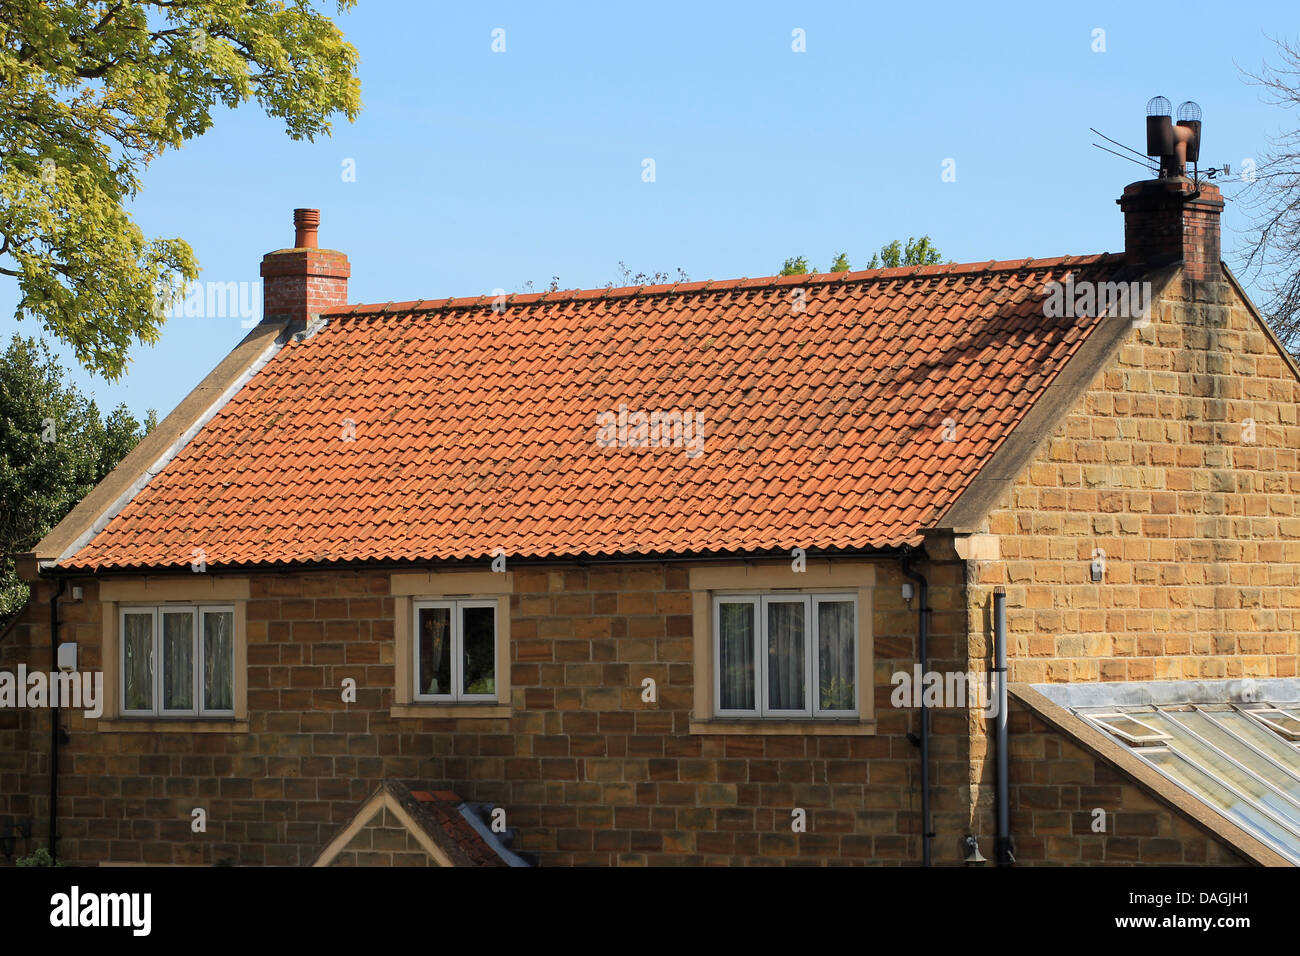 Extérieur de maison en brique avec des toits de tuiles rouges, en Angleterre. Banque D'Images